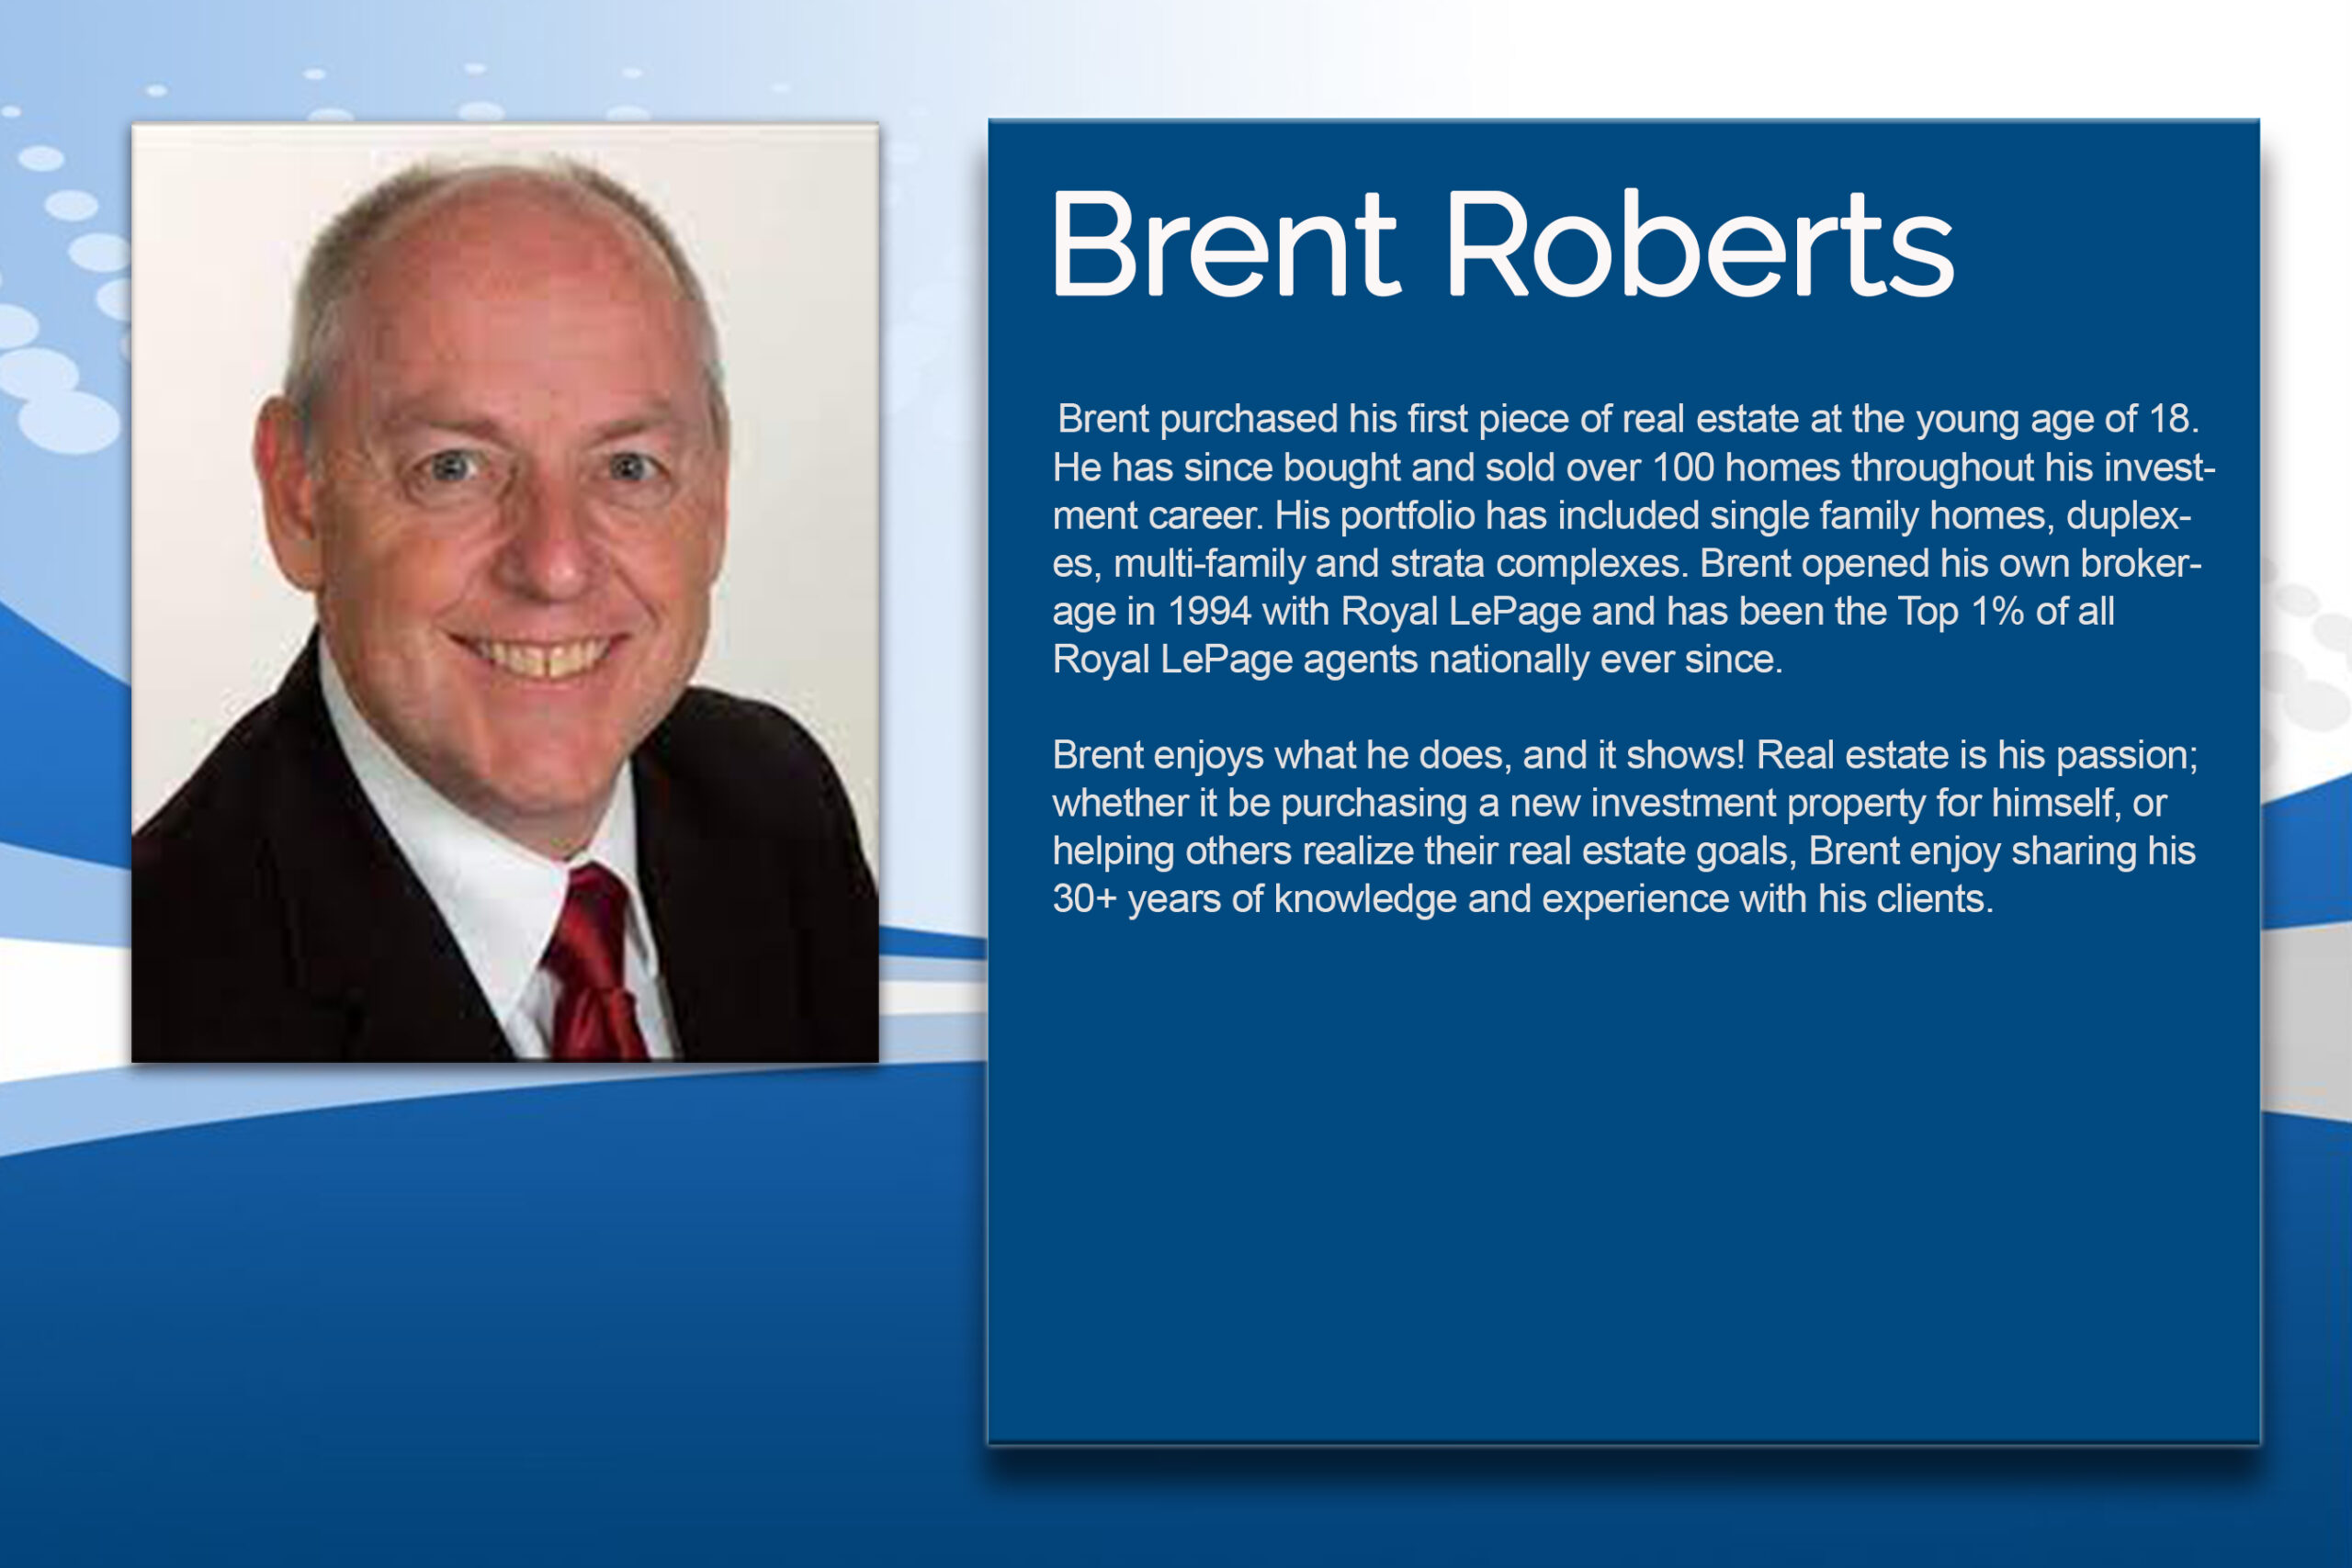 Brent Roberts